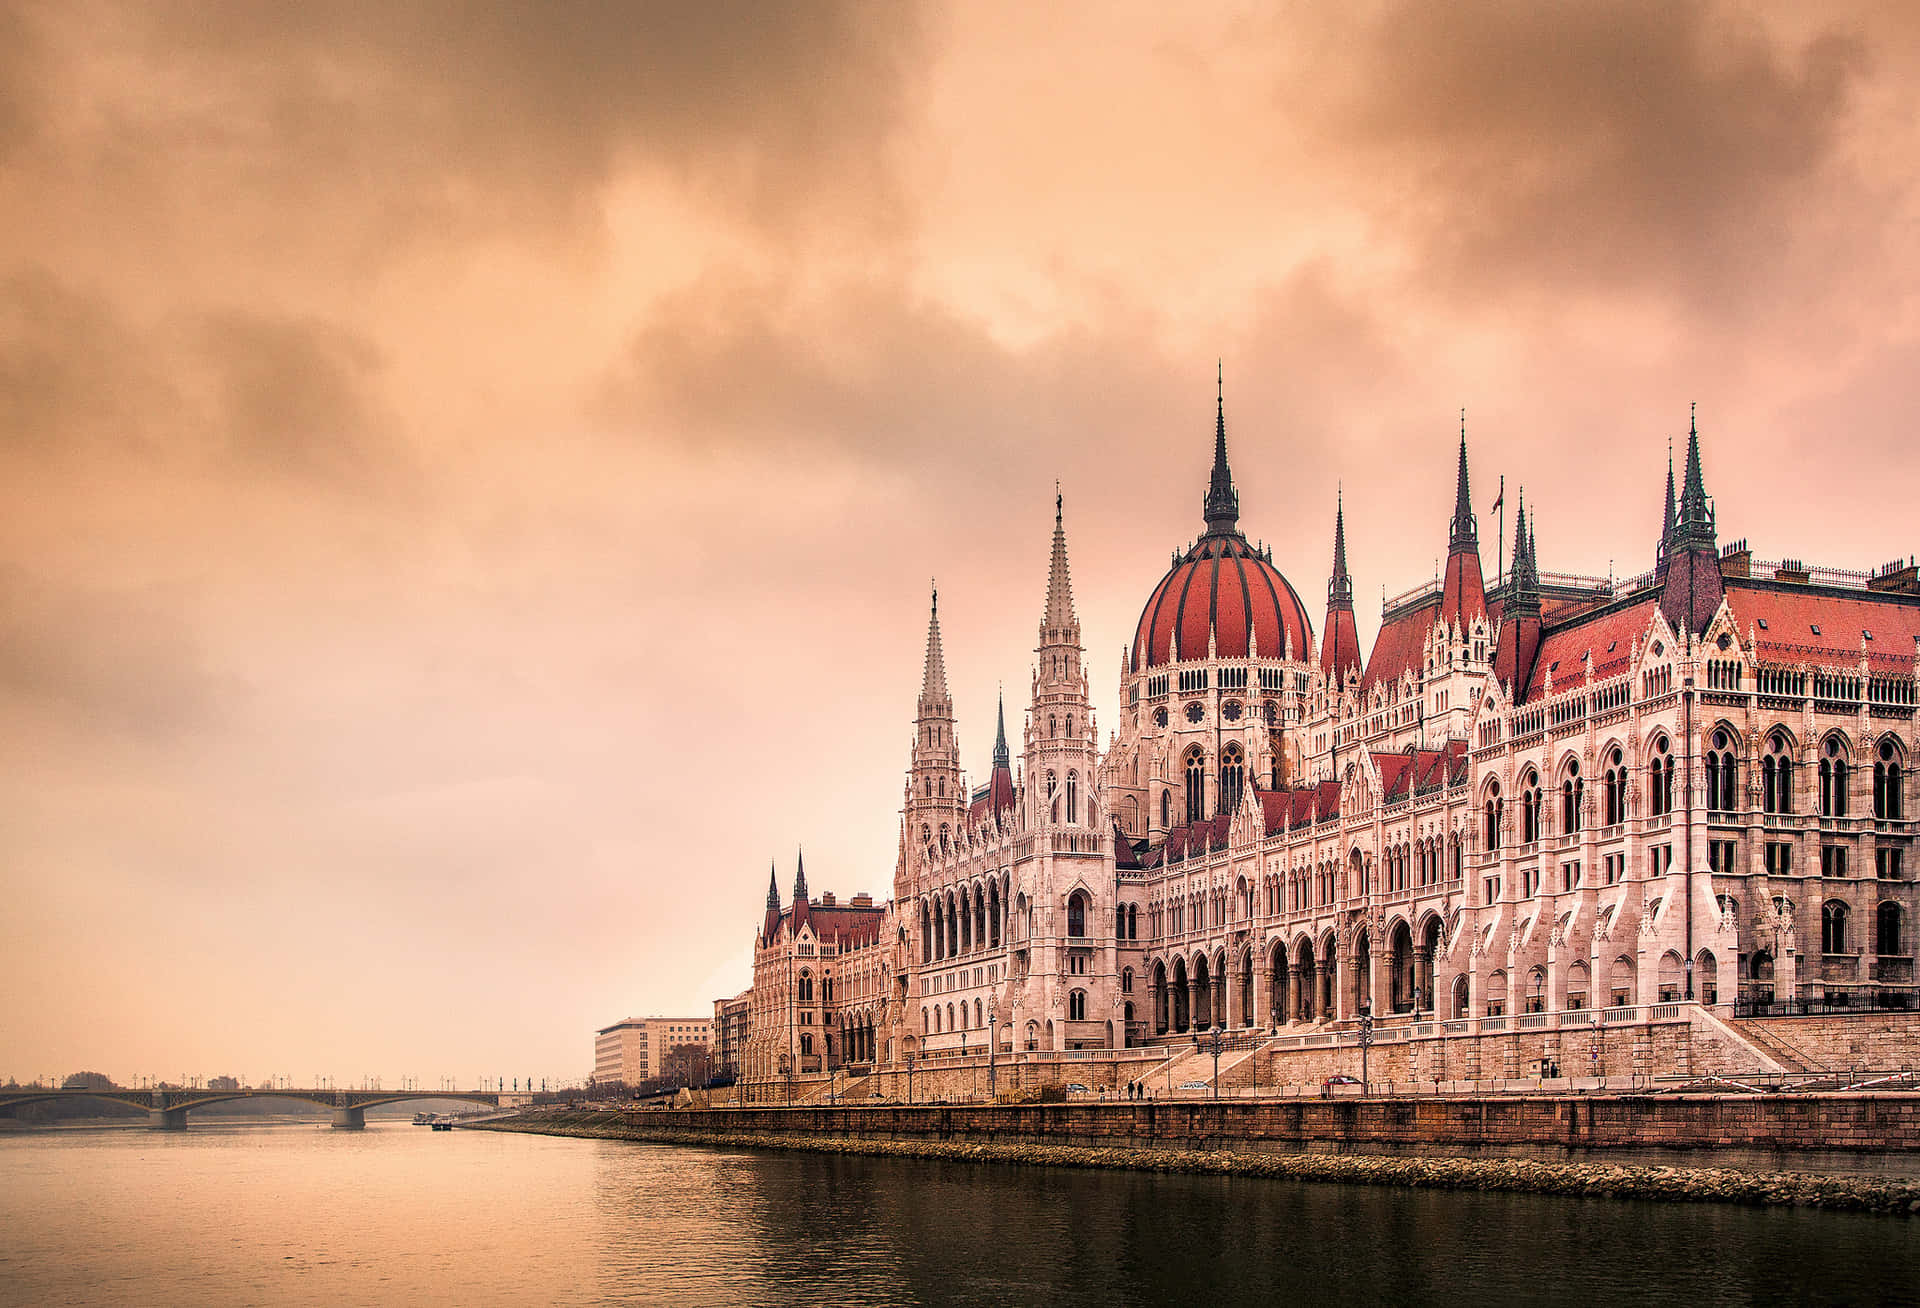 Impresionanteatardecer En El Parlamento De Hungría Fondo de pantalla